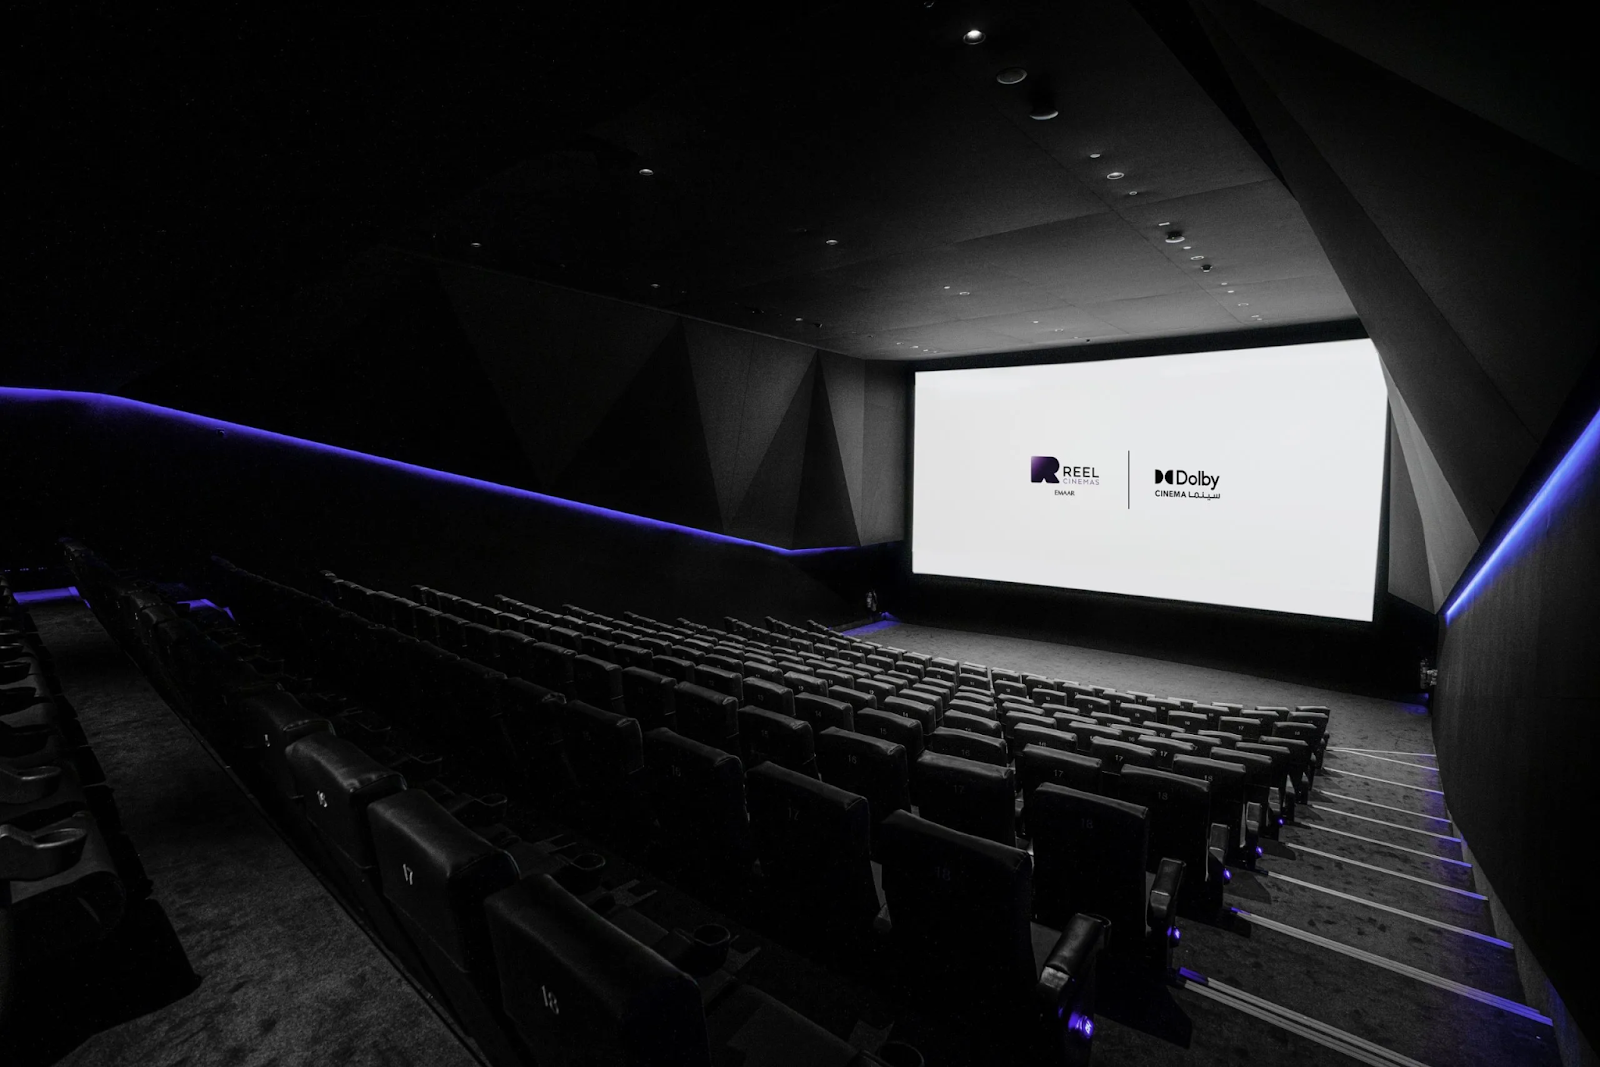 Cinemas in Dubai